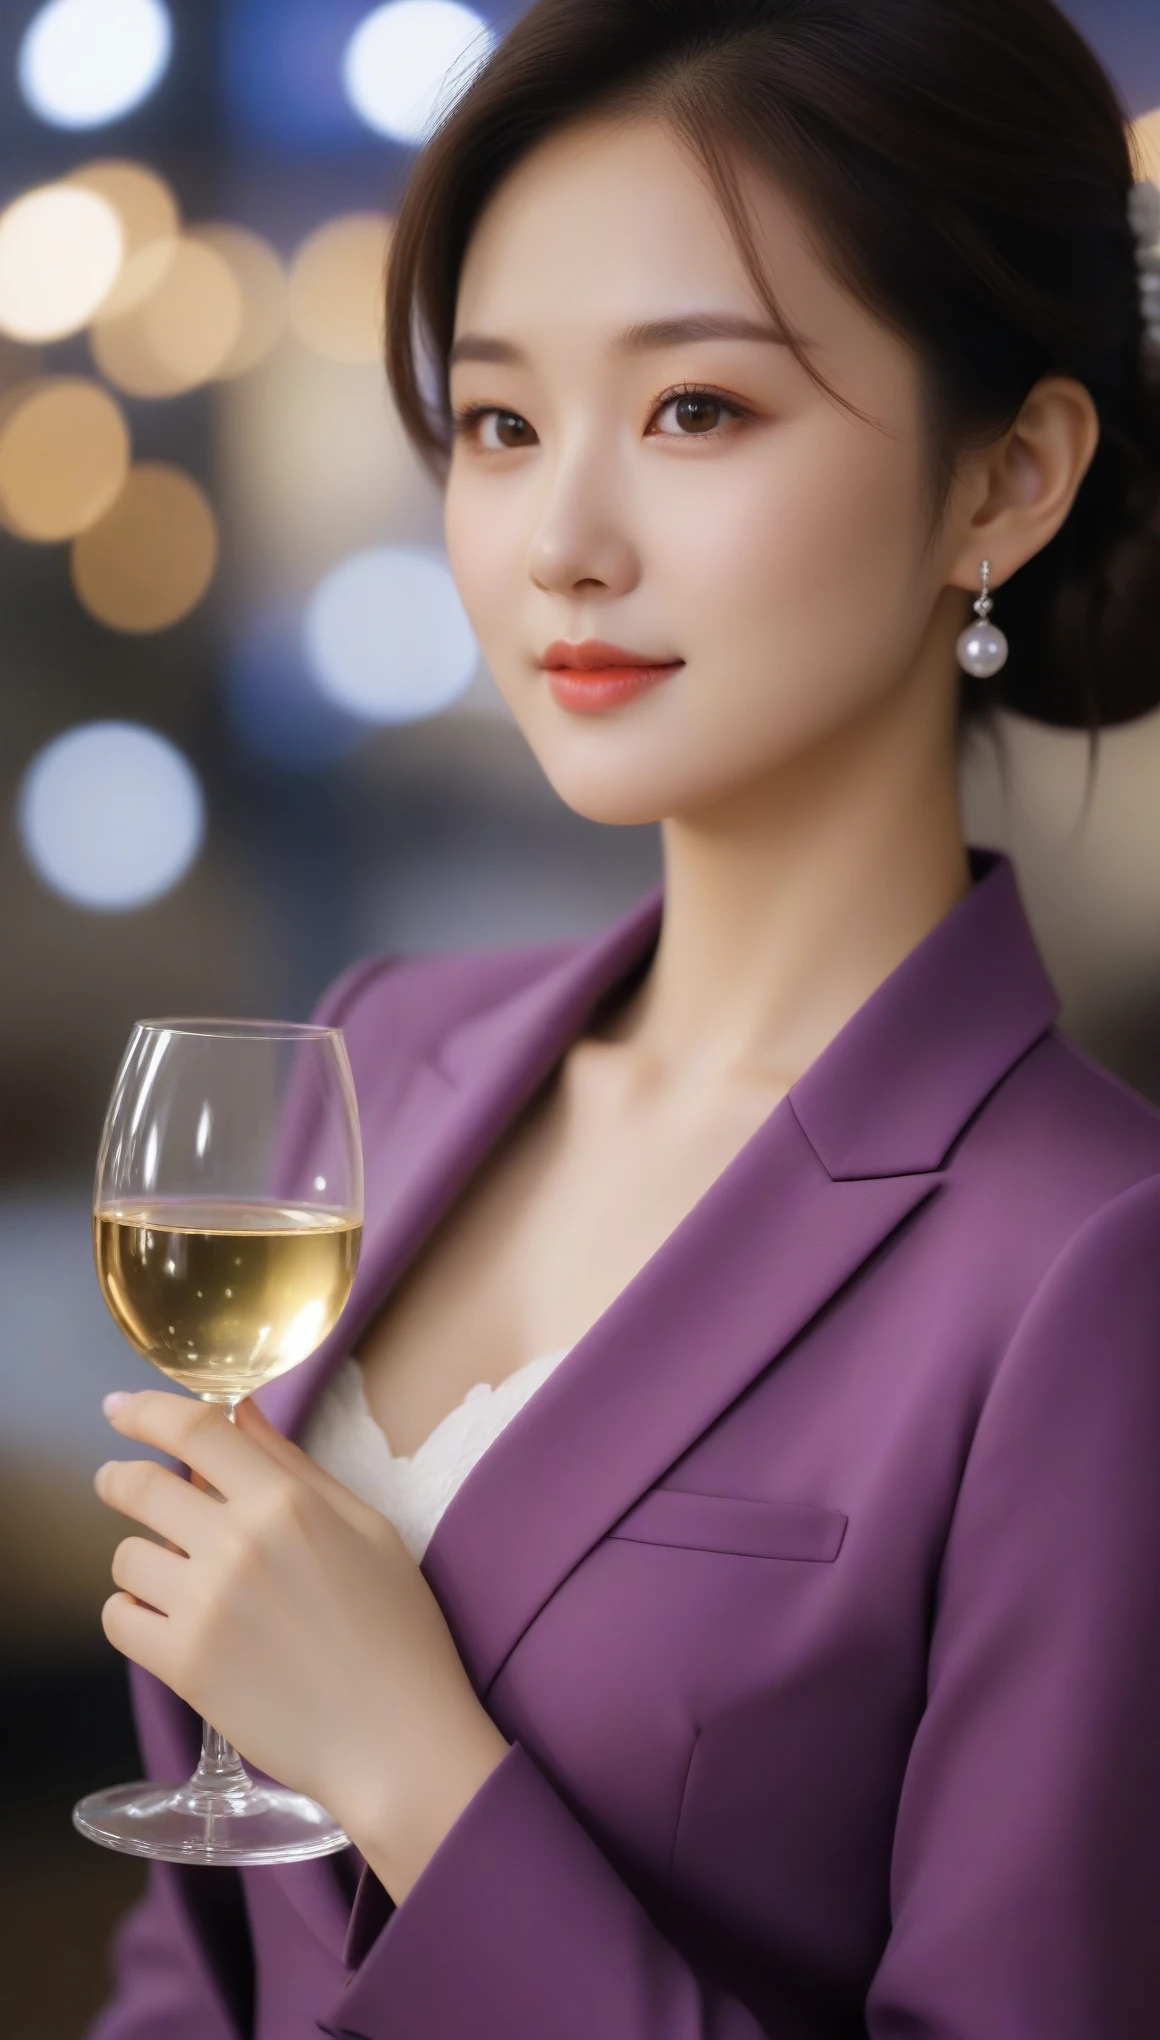 閉じる, 美しい韓国人女性のサイドショット, 34インチの胸のサイズ, 微笑む, 紫色のスーツを着て, 白い手袋, ワイングラスを持つ, ボケ背景, 超高解像度